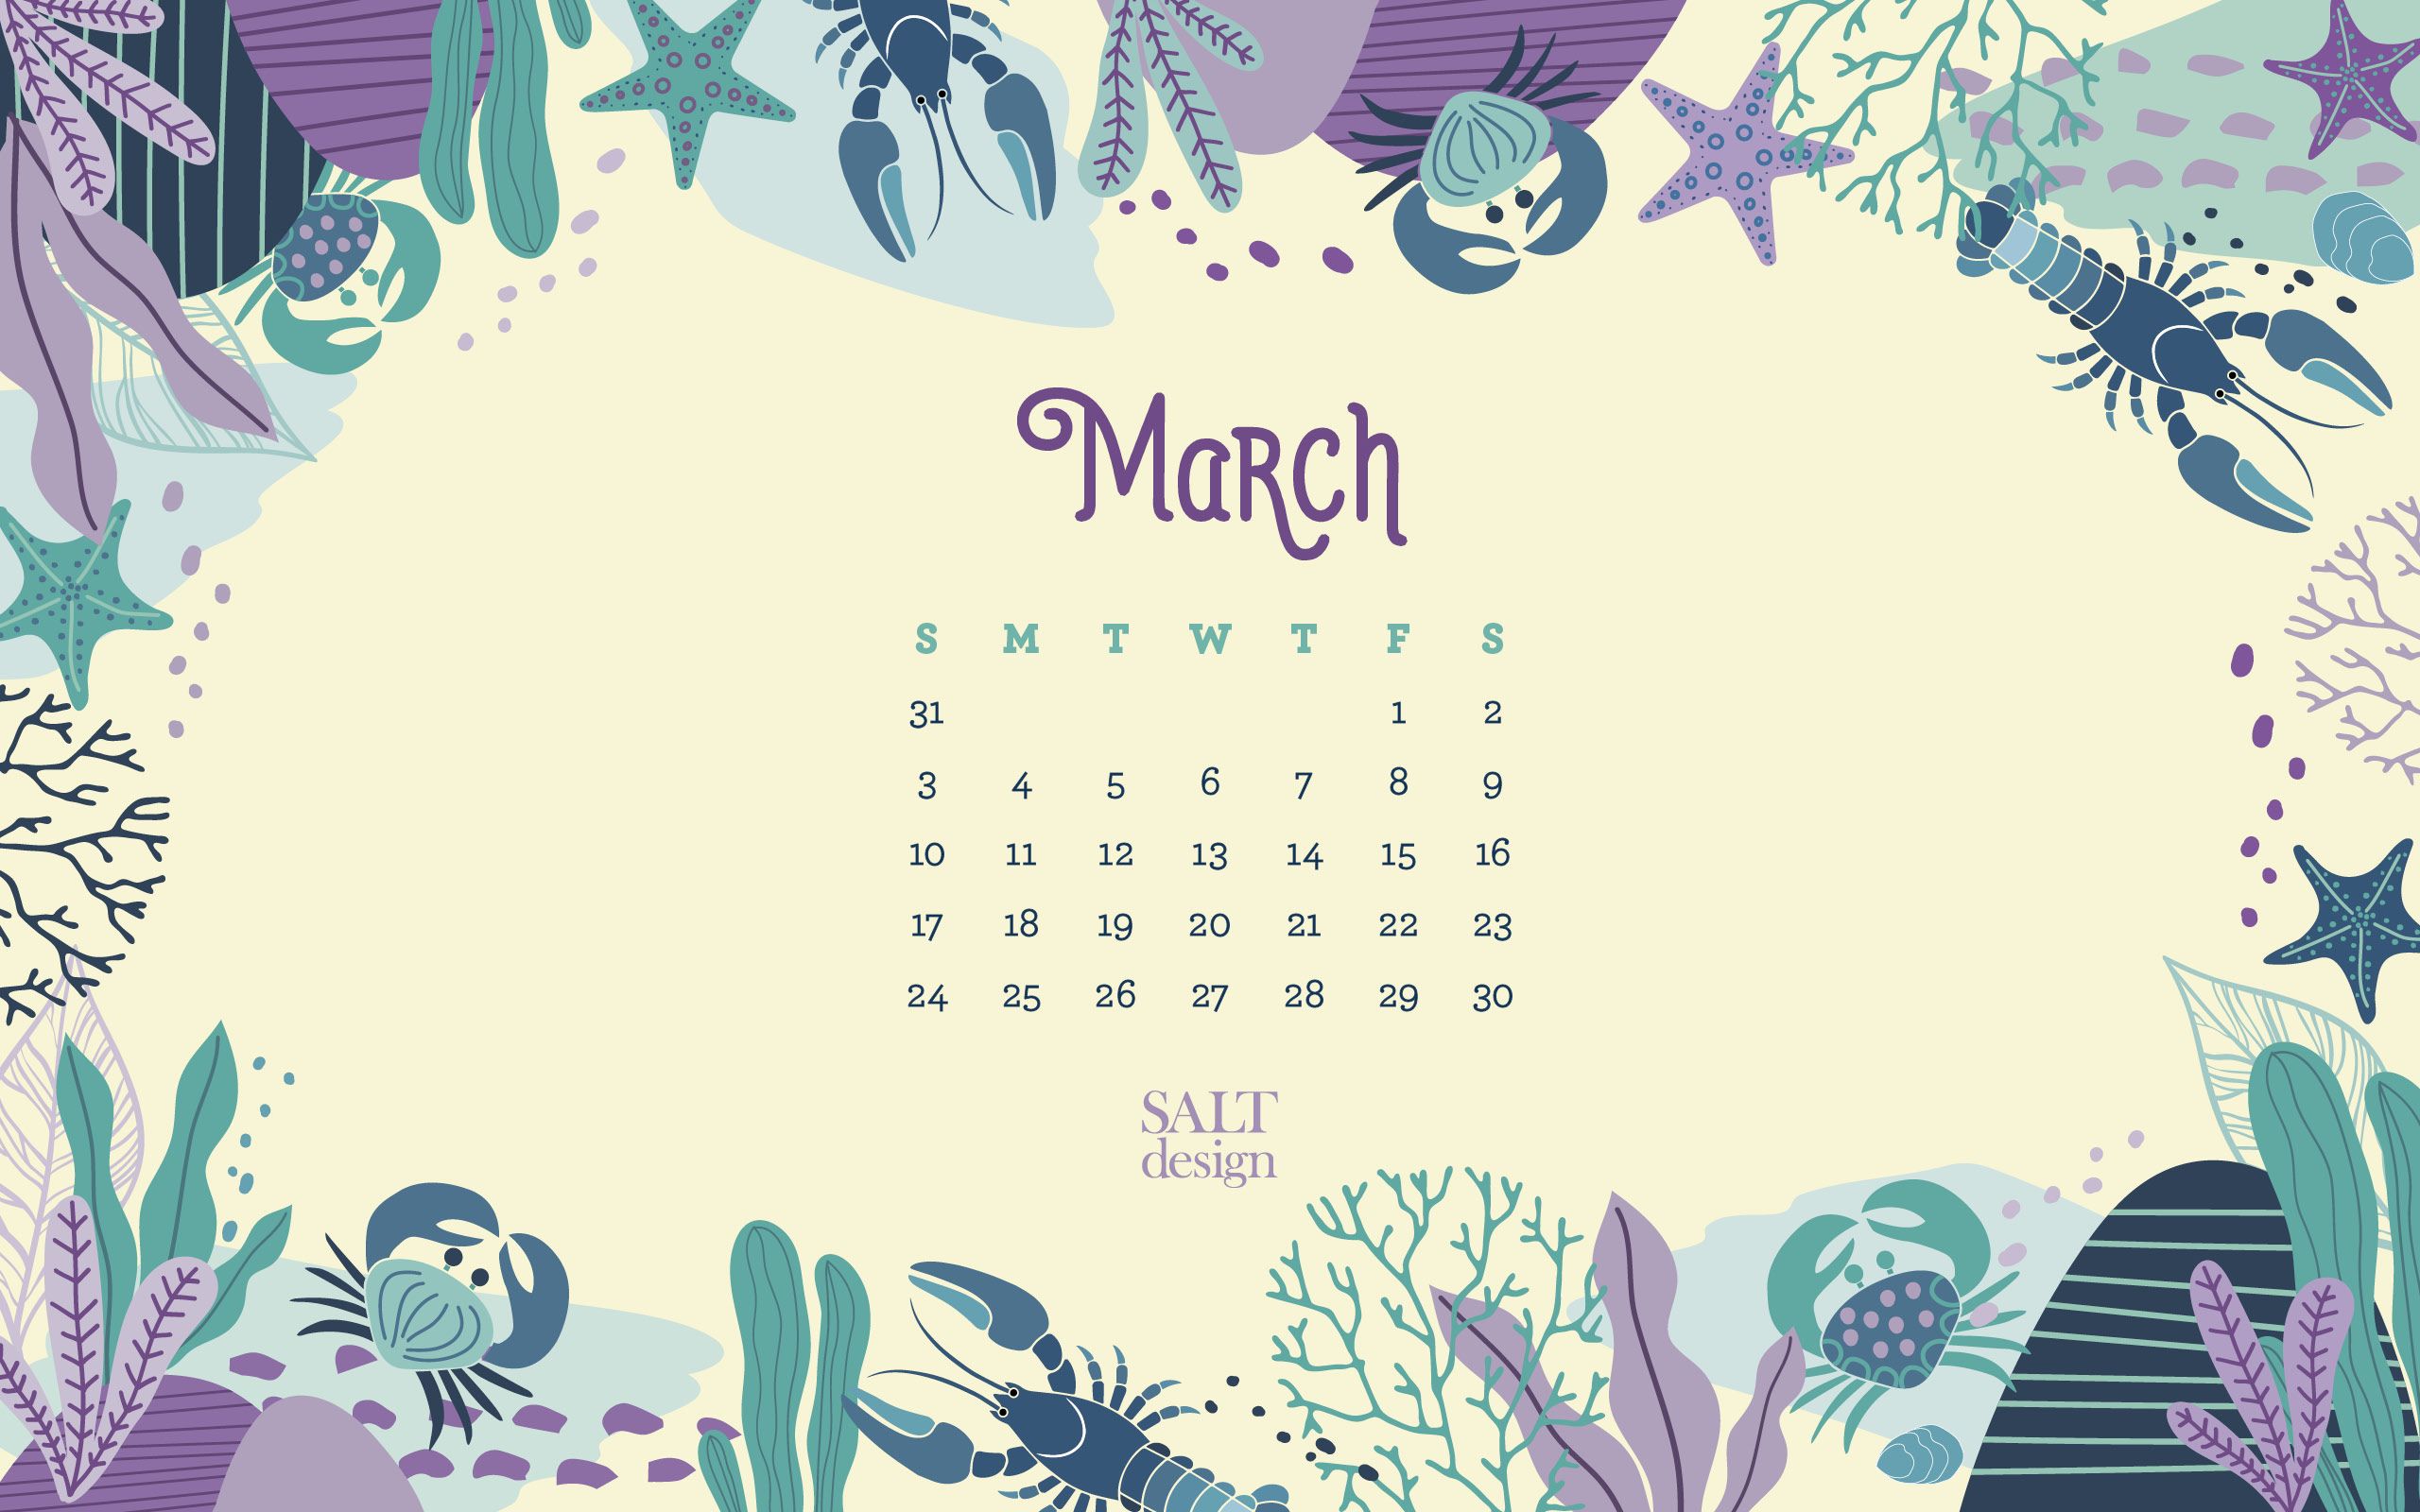 SALT 2019 March Calendar // FREE Wallpaper Design